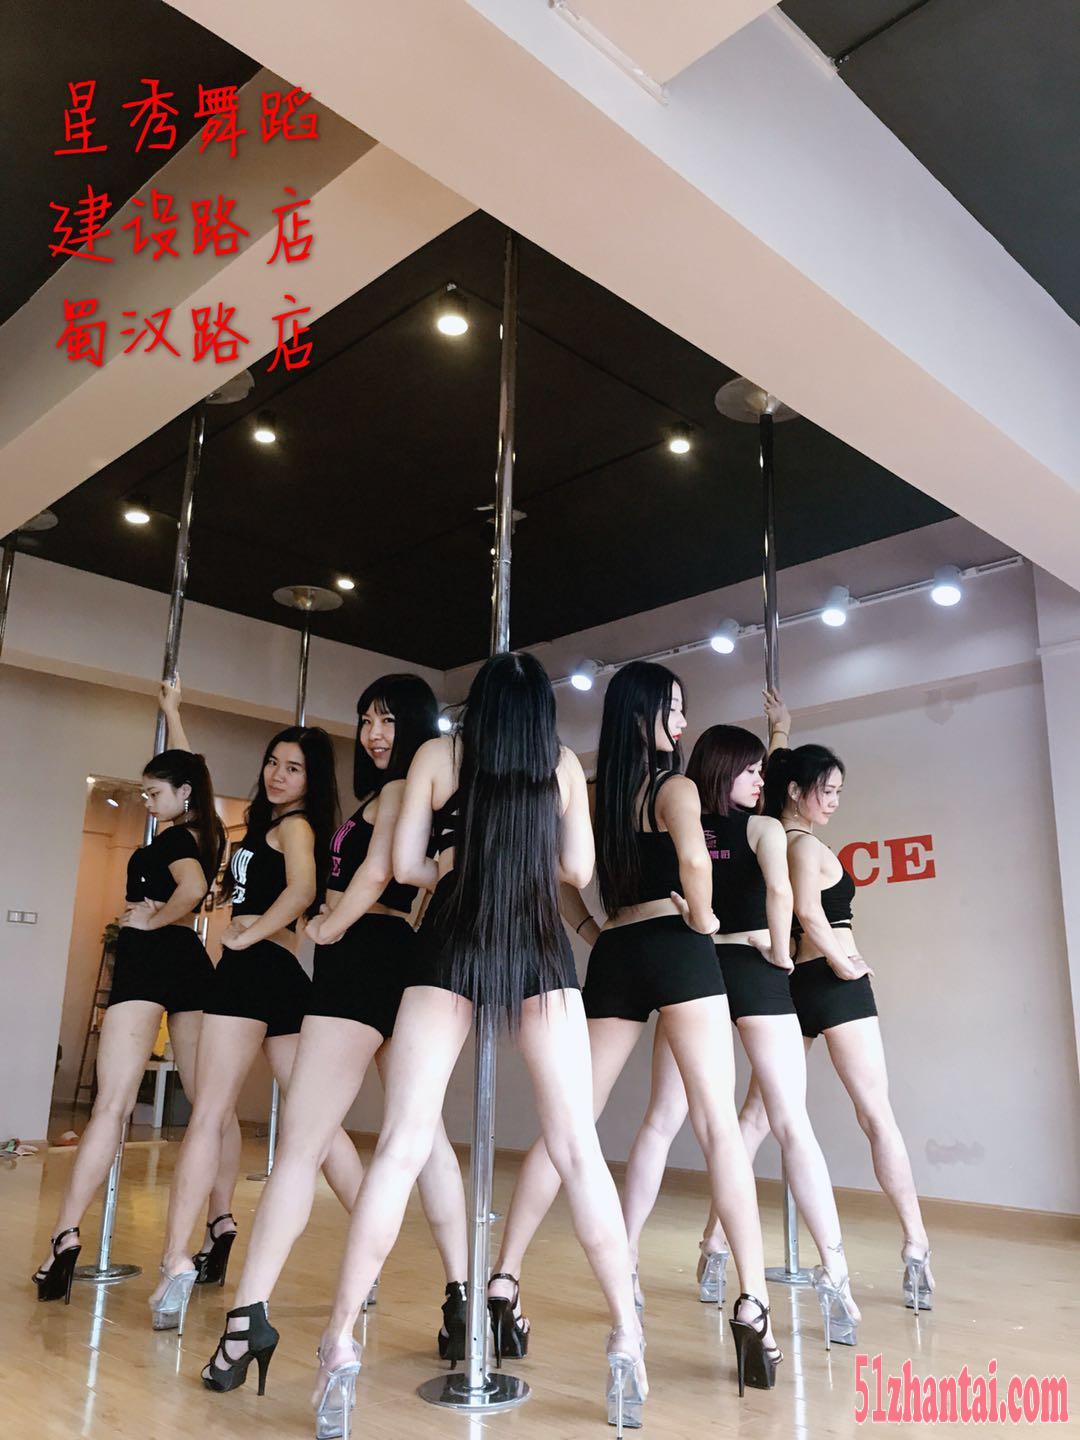 成都锦江区哪里有成人舞蹈培训班 星秀钢管舞 爵士舞成人培训-图4